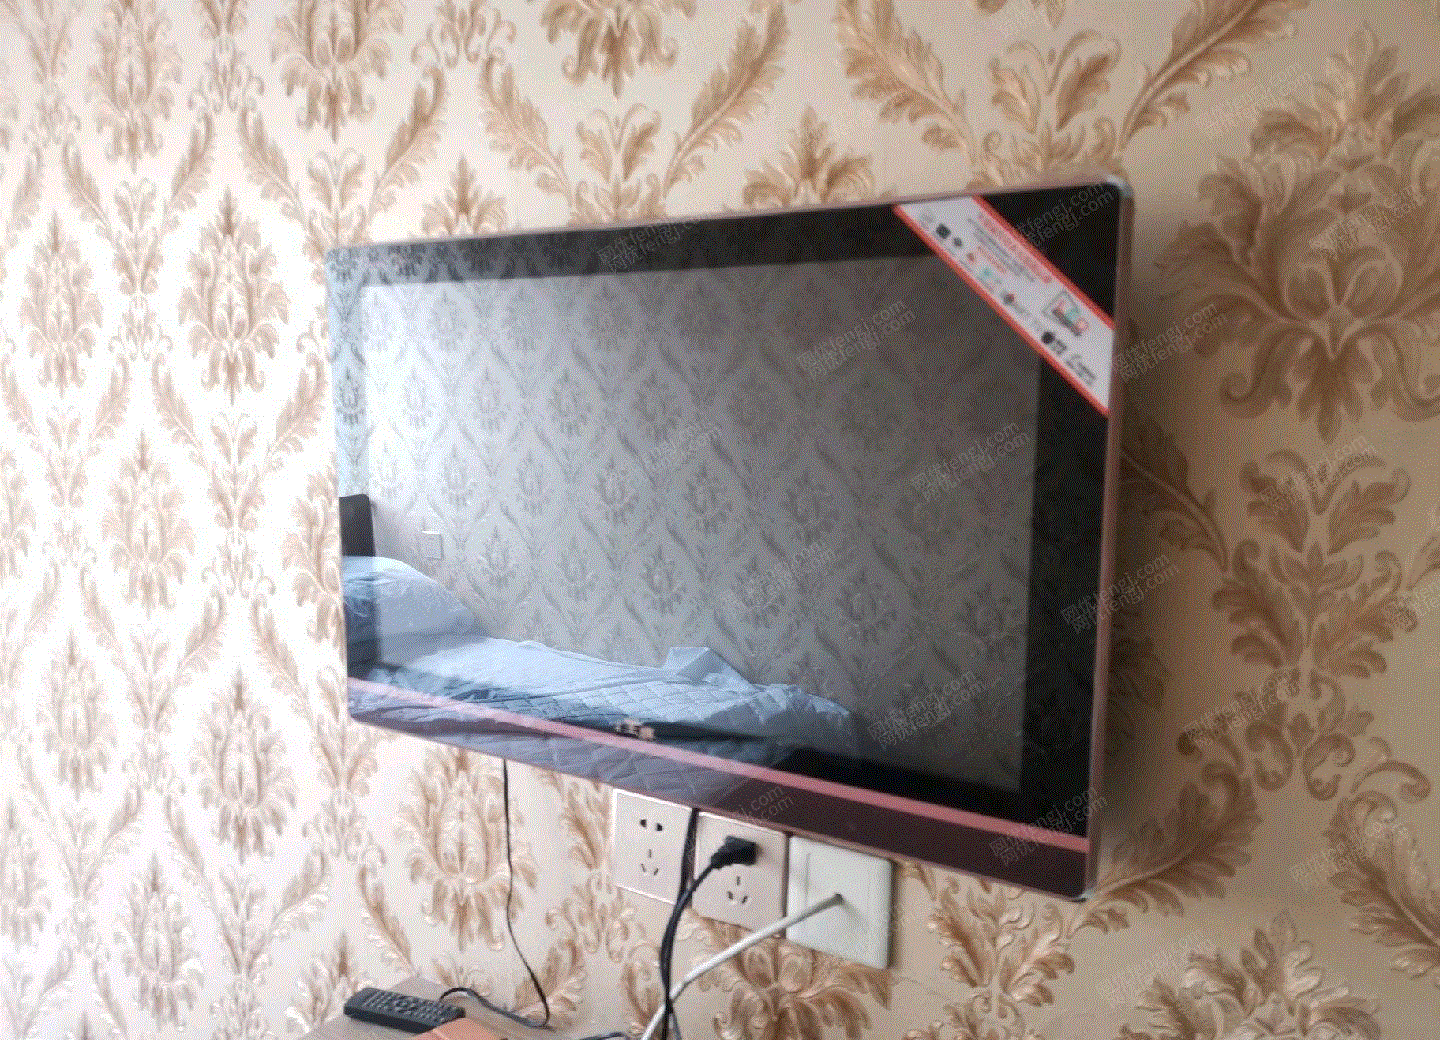 电视机回收